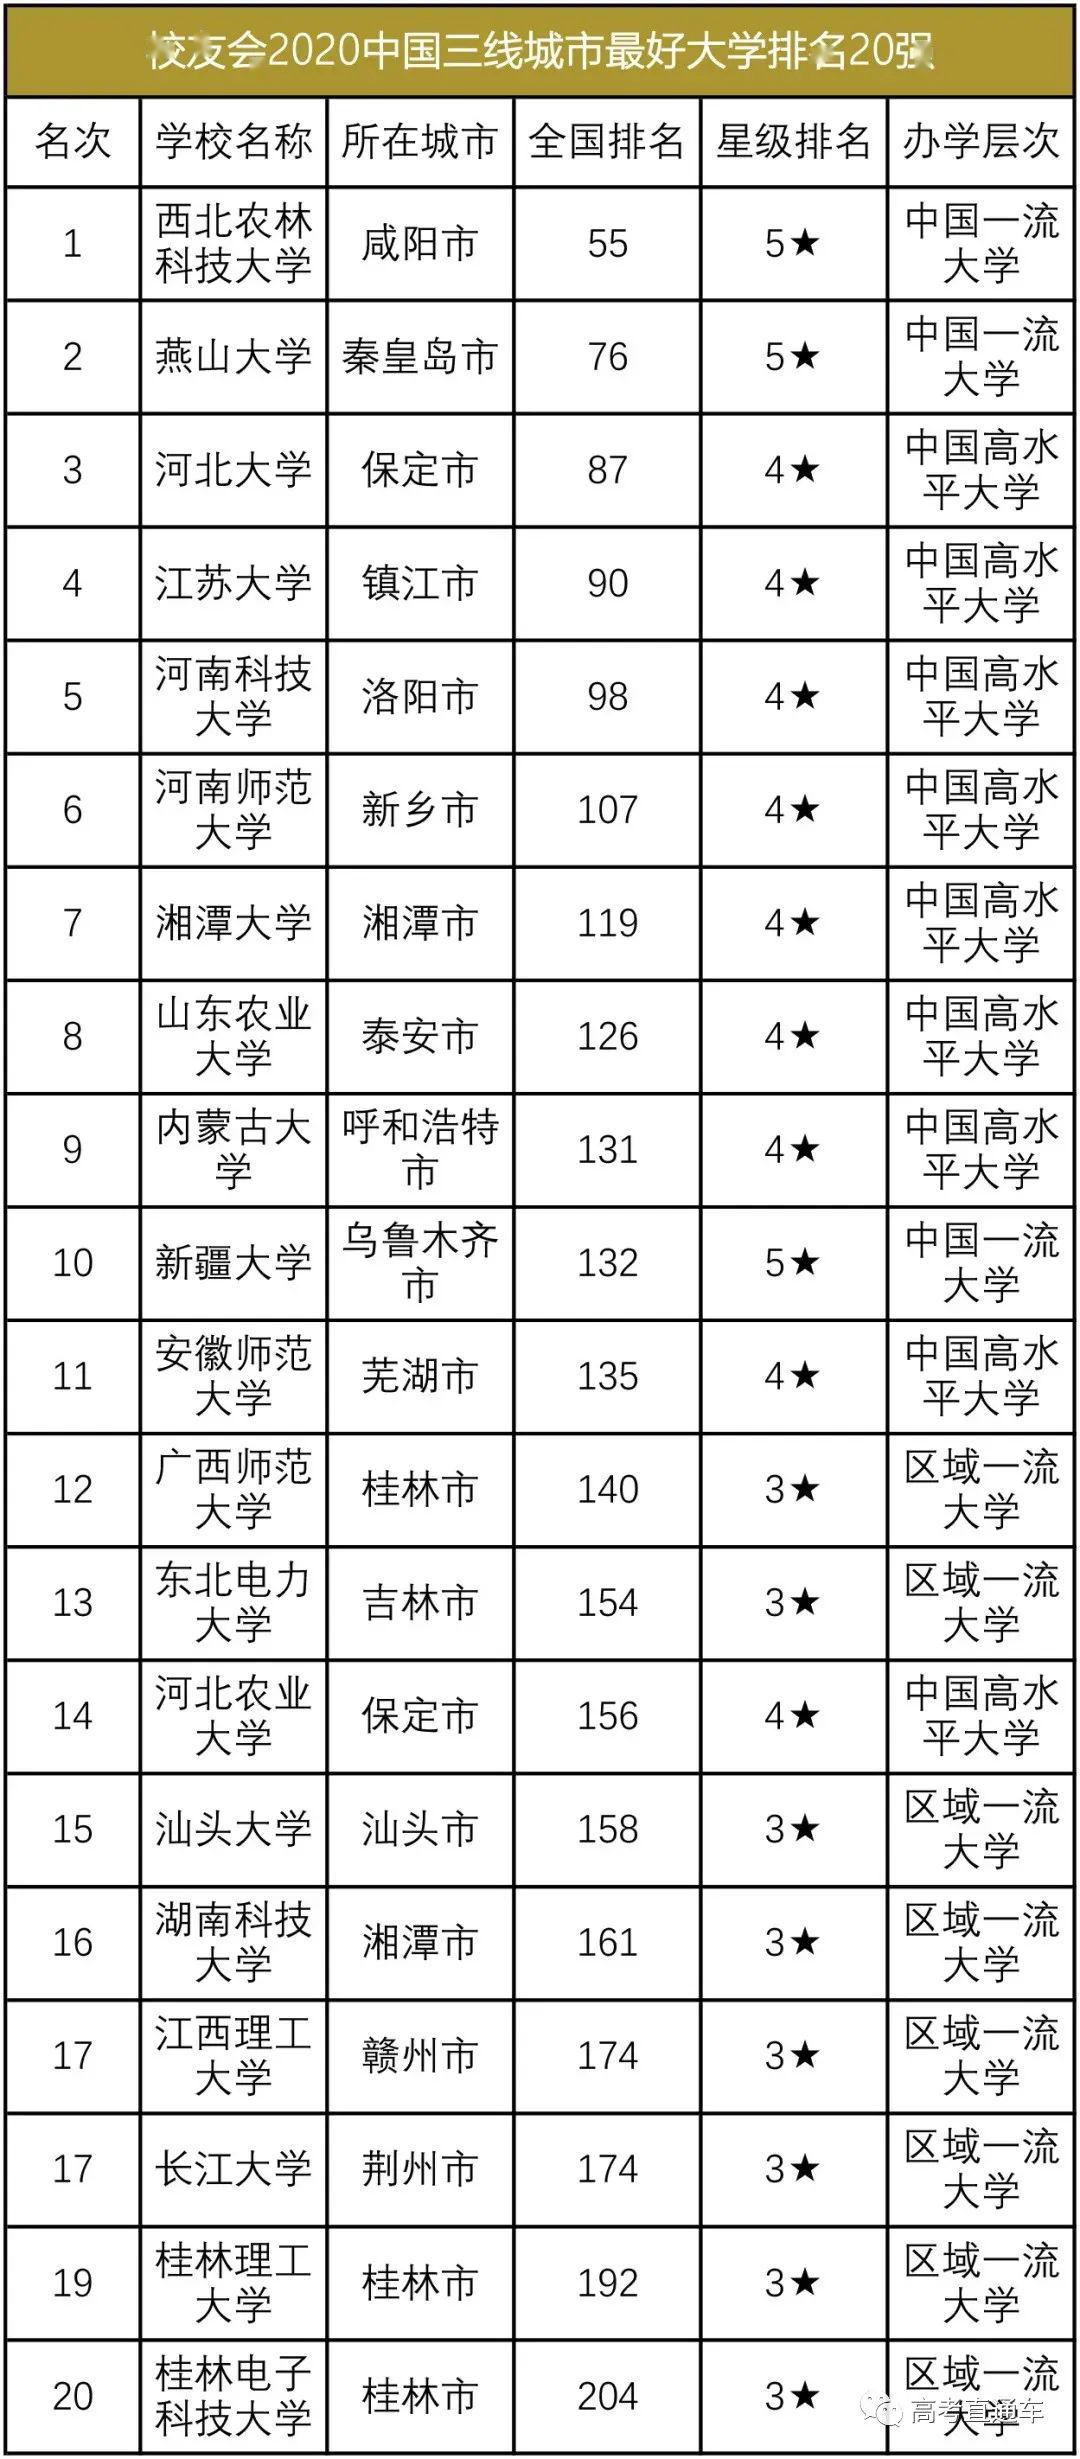 吉林大学qs排名2020_2020中国部属大学学术排名发布,哈工大吉大挺进前十